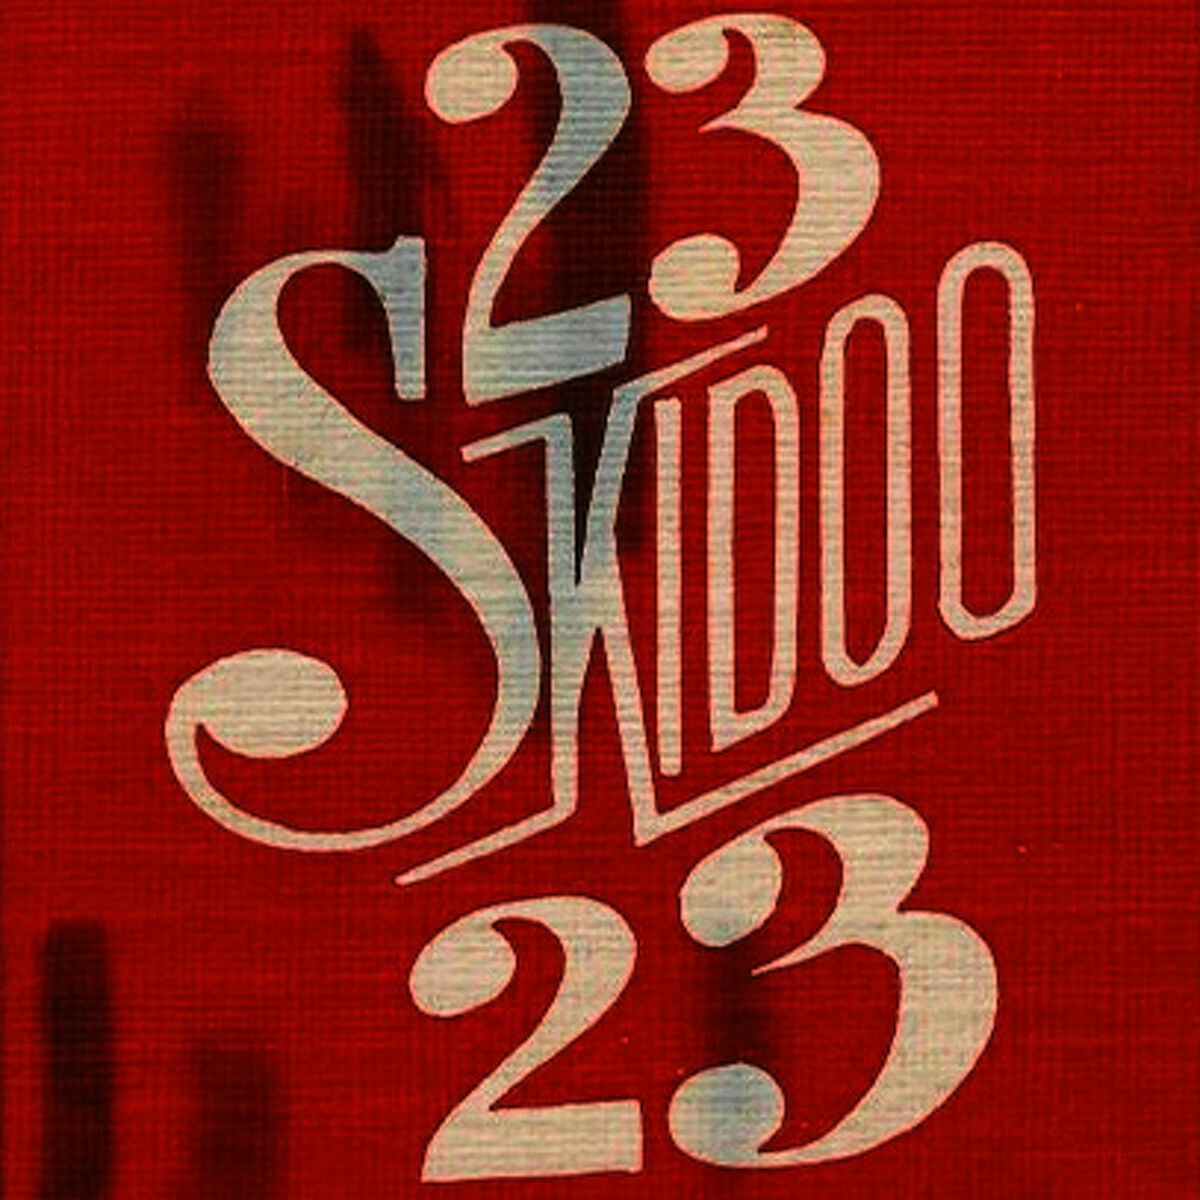 23 Skidoo: albums, songs, playlists | Listen on Deezer